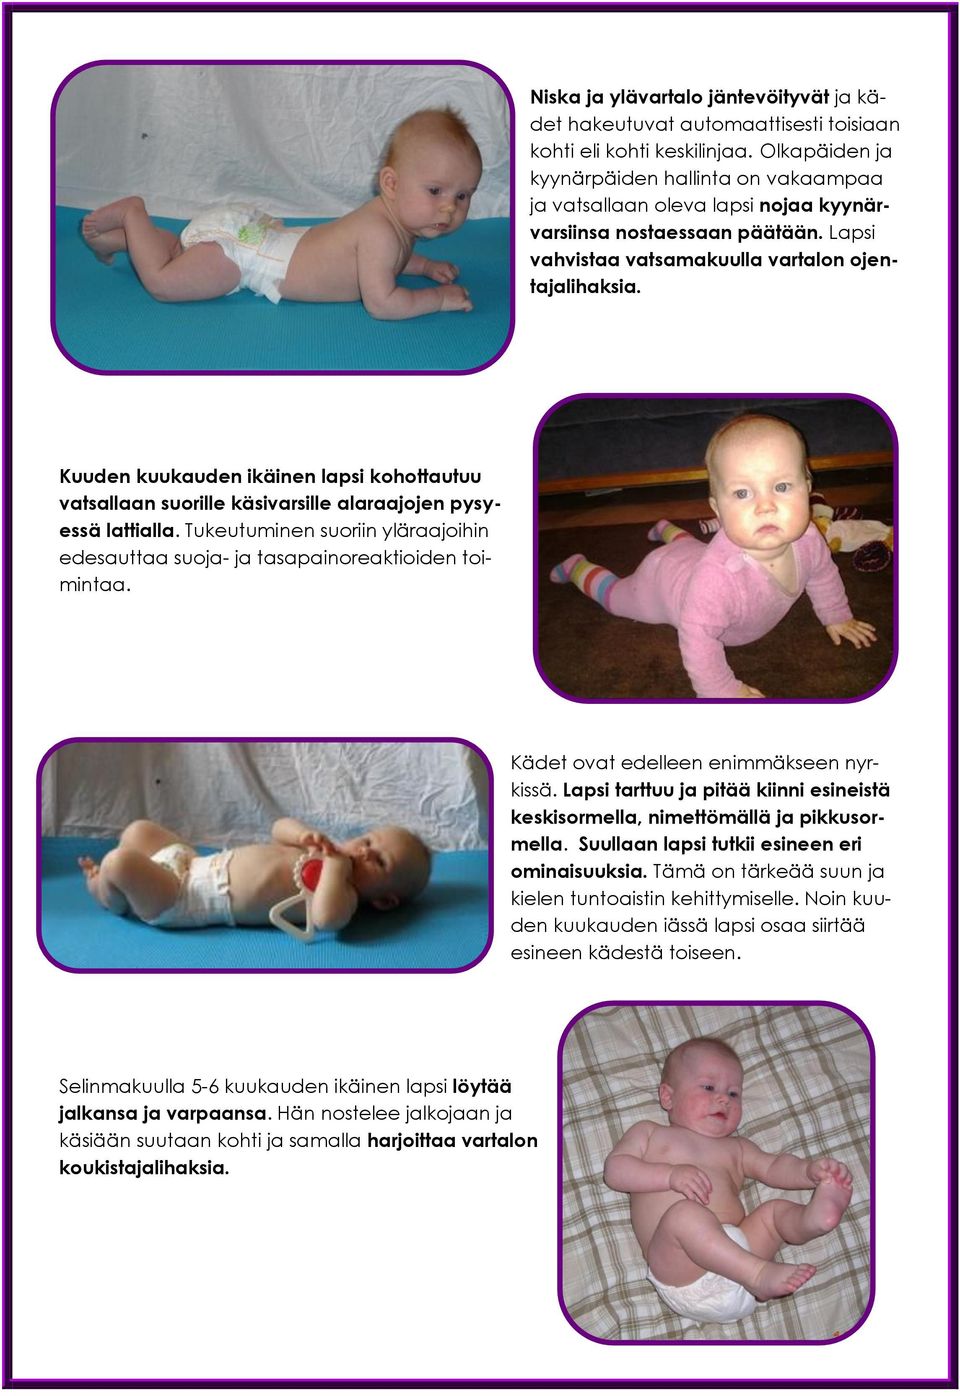 Kuuden kuukauden ikäinen lapsi kohottautuu vatsallaan suorille käsivarsille alaraajojen pysyessä lattialla. Tukeutuminen suoriin yläraajoihin edesauttaa suoja- ja tasapainoreaktioiden toimintaa.